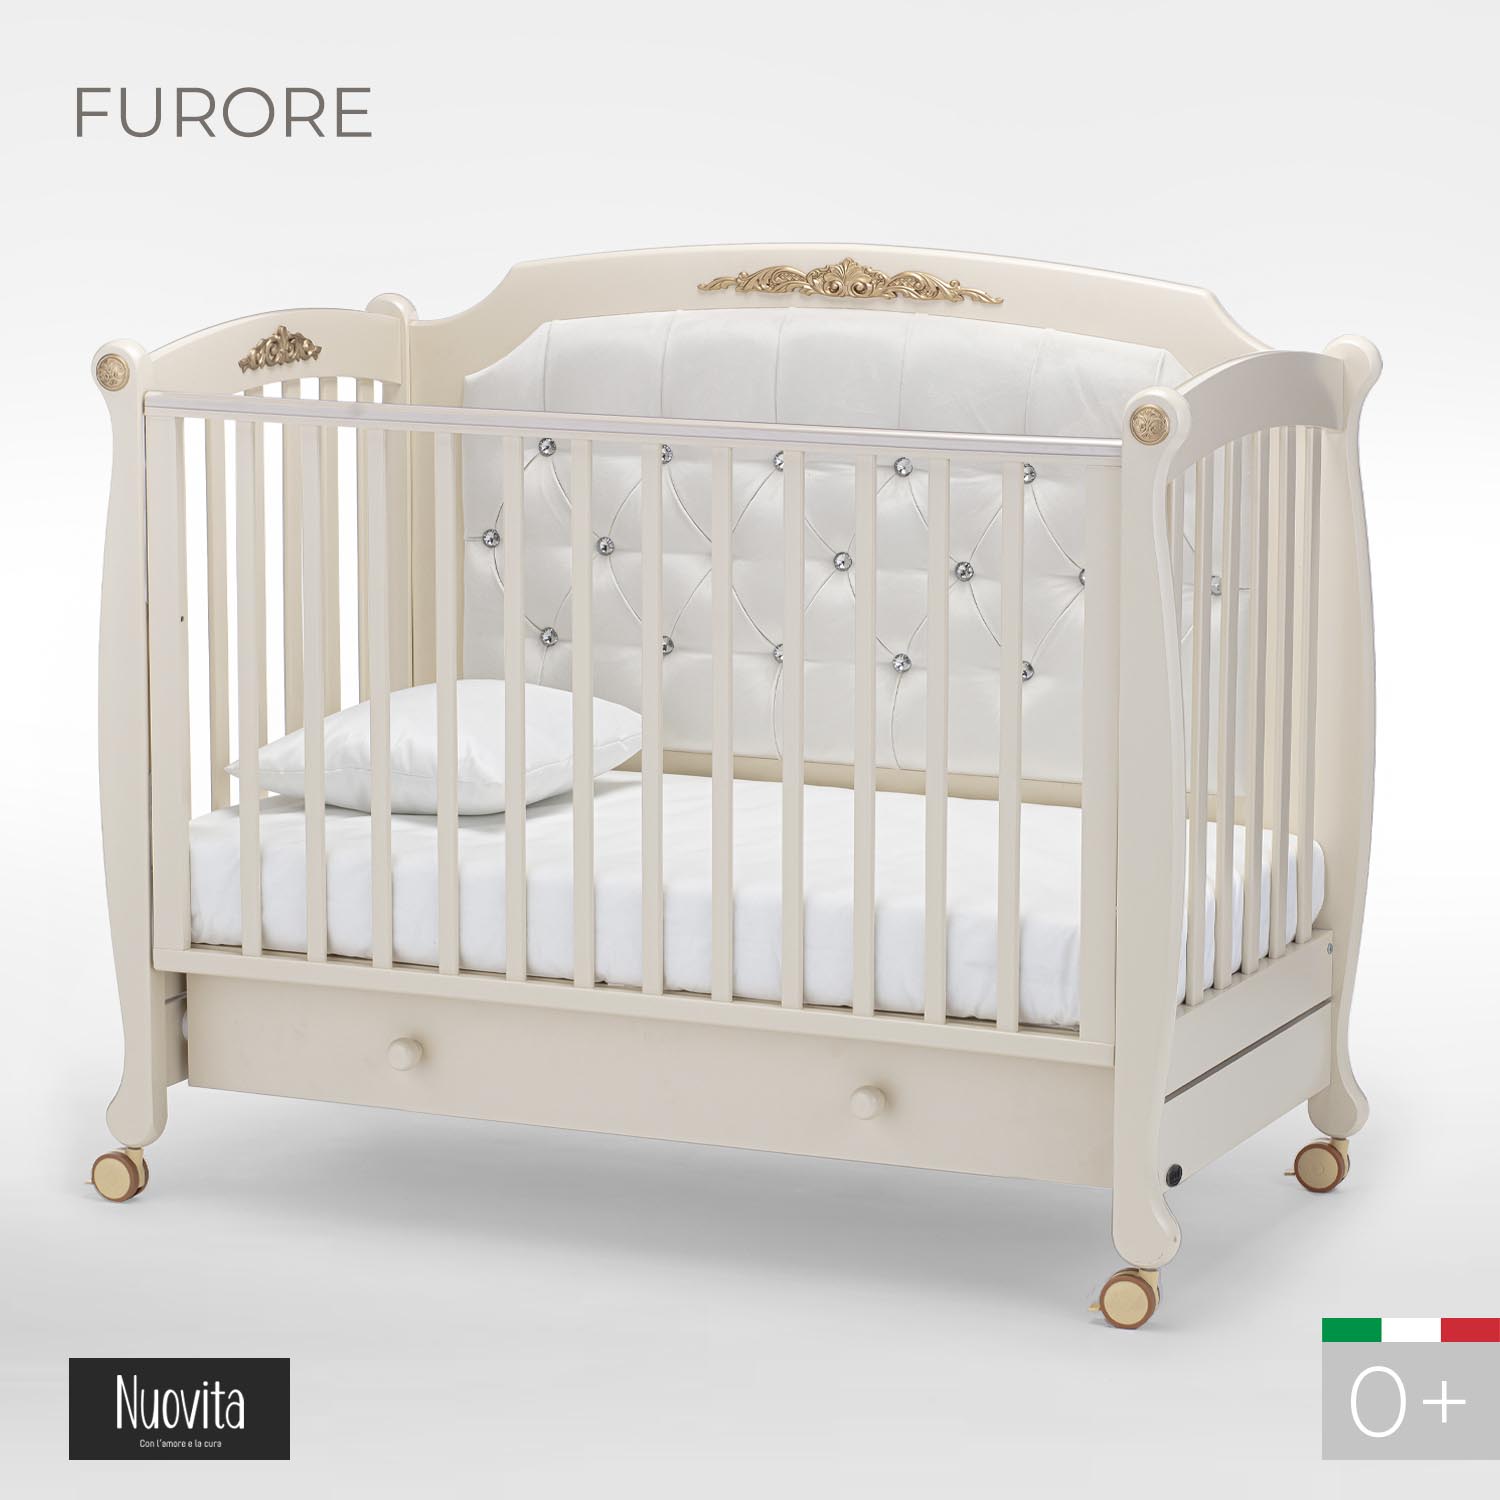 Детская кроватка Nuovita Furore прямоугольная, без маятника (слоновая кость) - фото 2